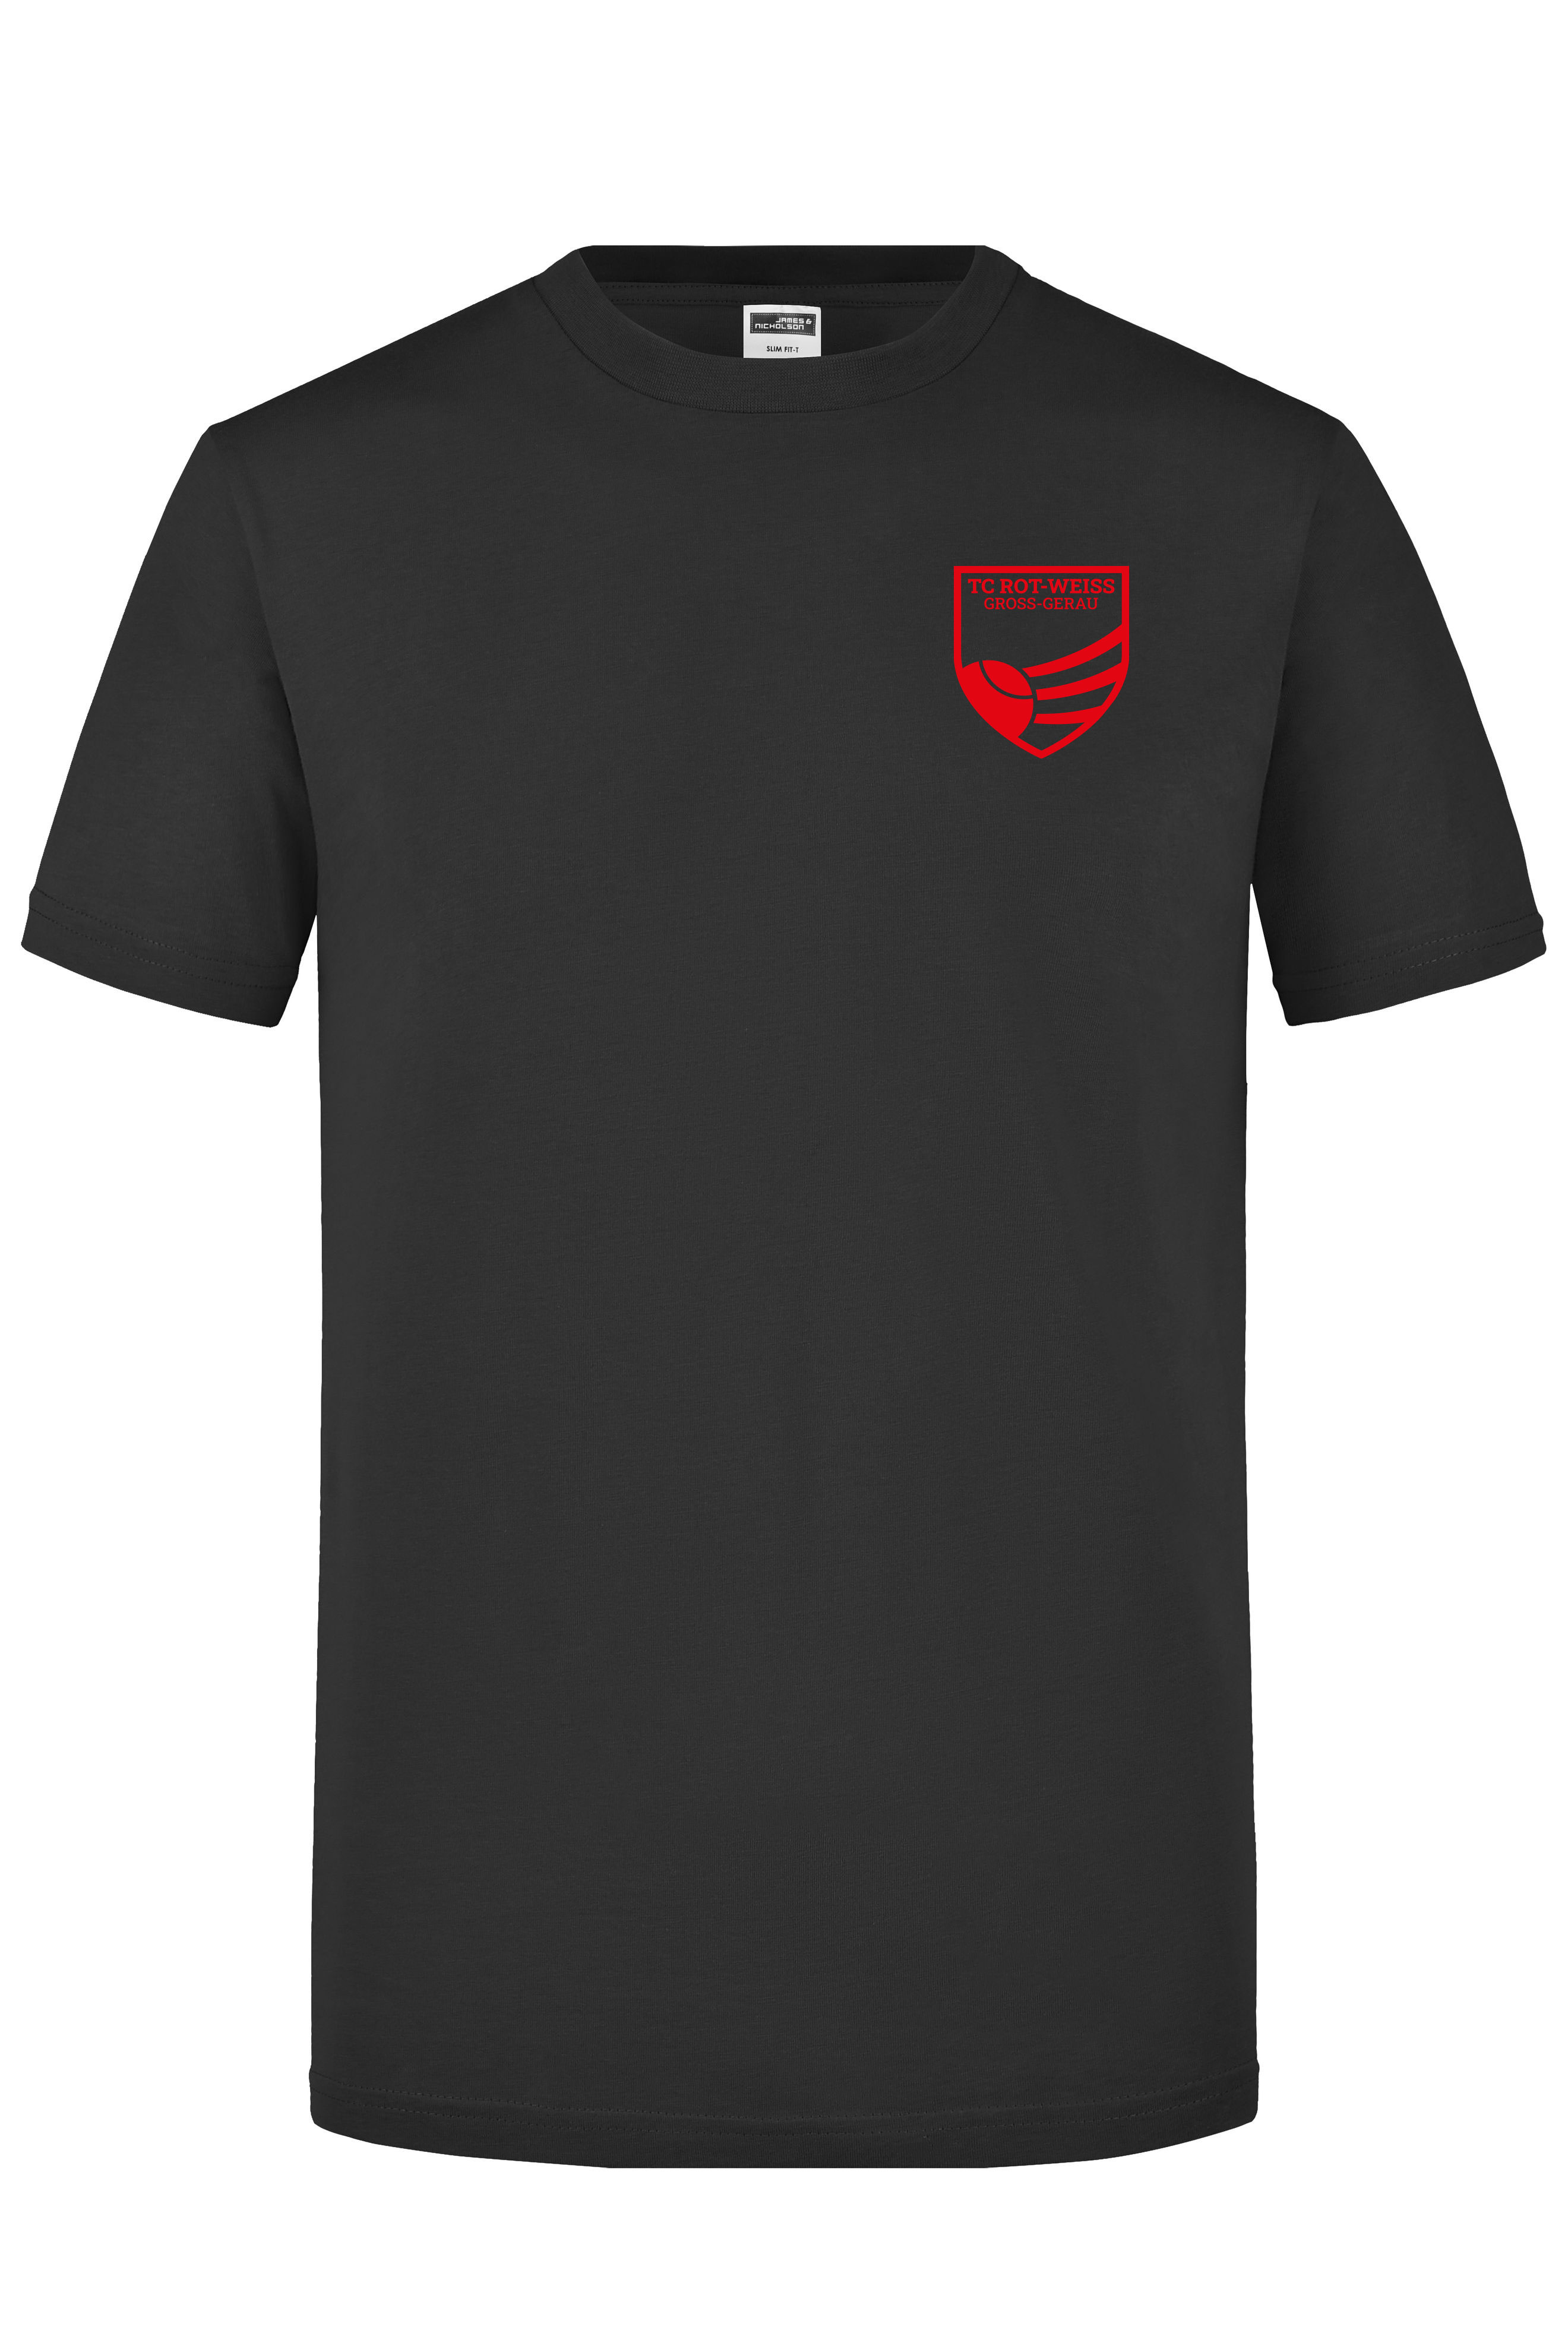 TC Rot-Weiss - Vorteil GG - T-Shirt rot auf schwarz